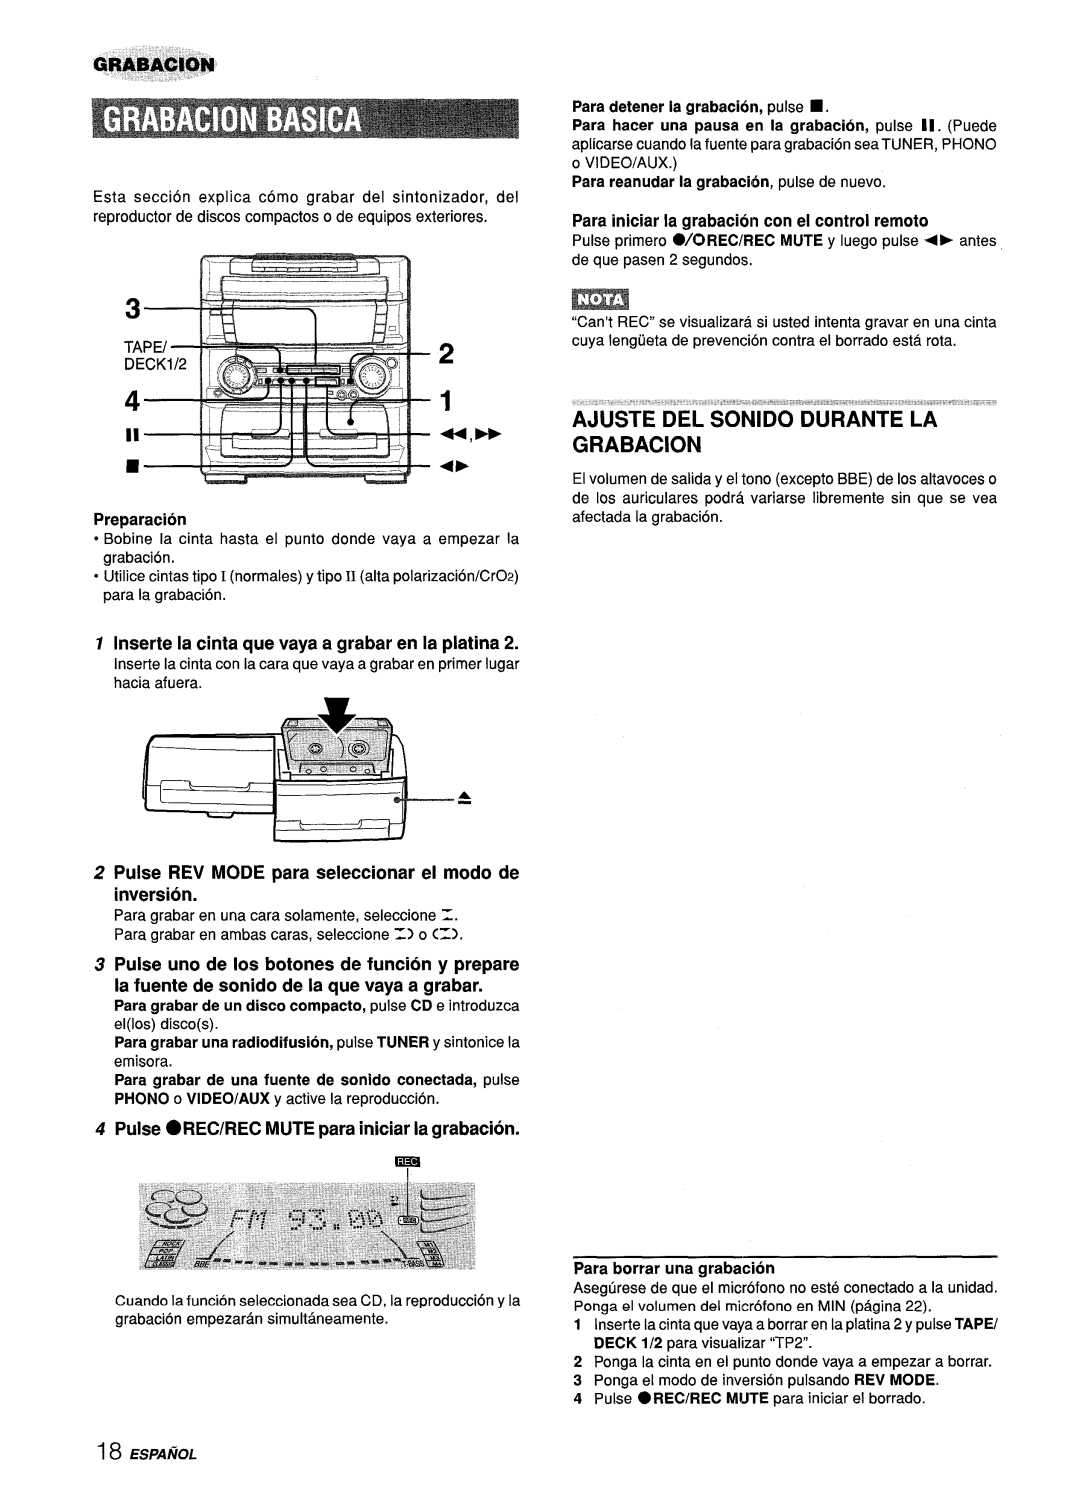 Aiwa Z-L70 manual 1 44,- +F, Ajuste Del Sonido Durante La Grabacion, Inserte la cinta que vaya a grabar en la platina 